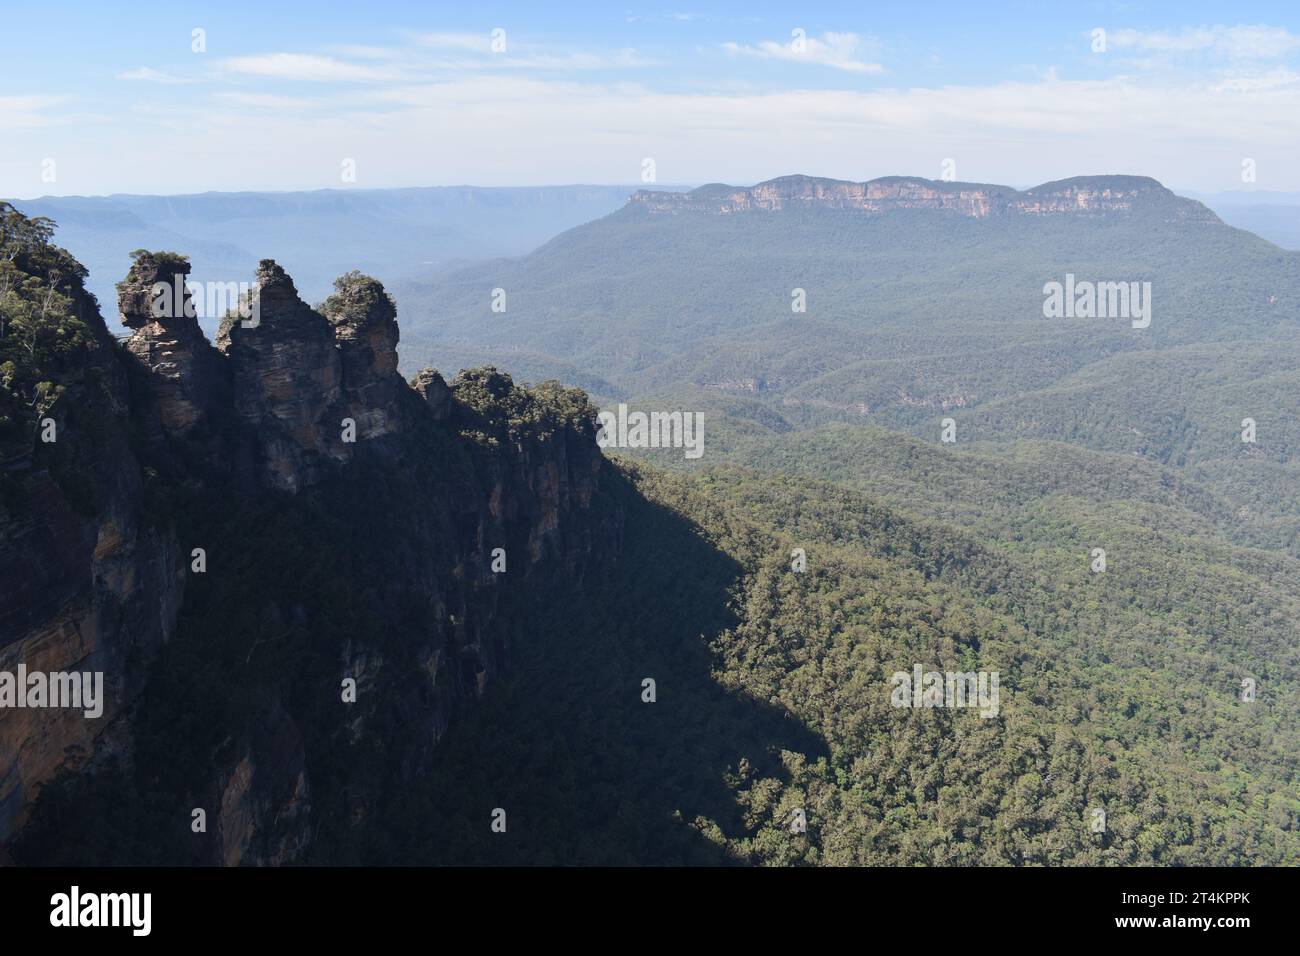 les 3 soeurs dans les Blues Mountains Australie Stock Photo